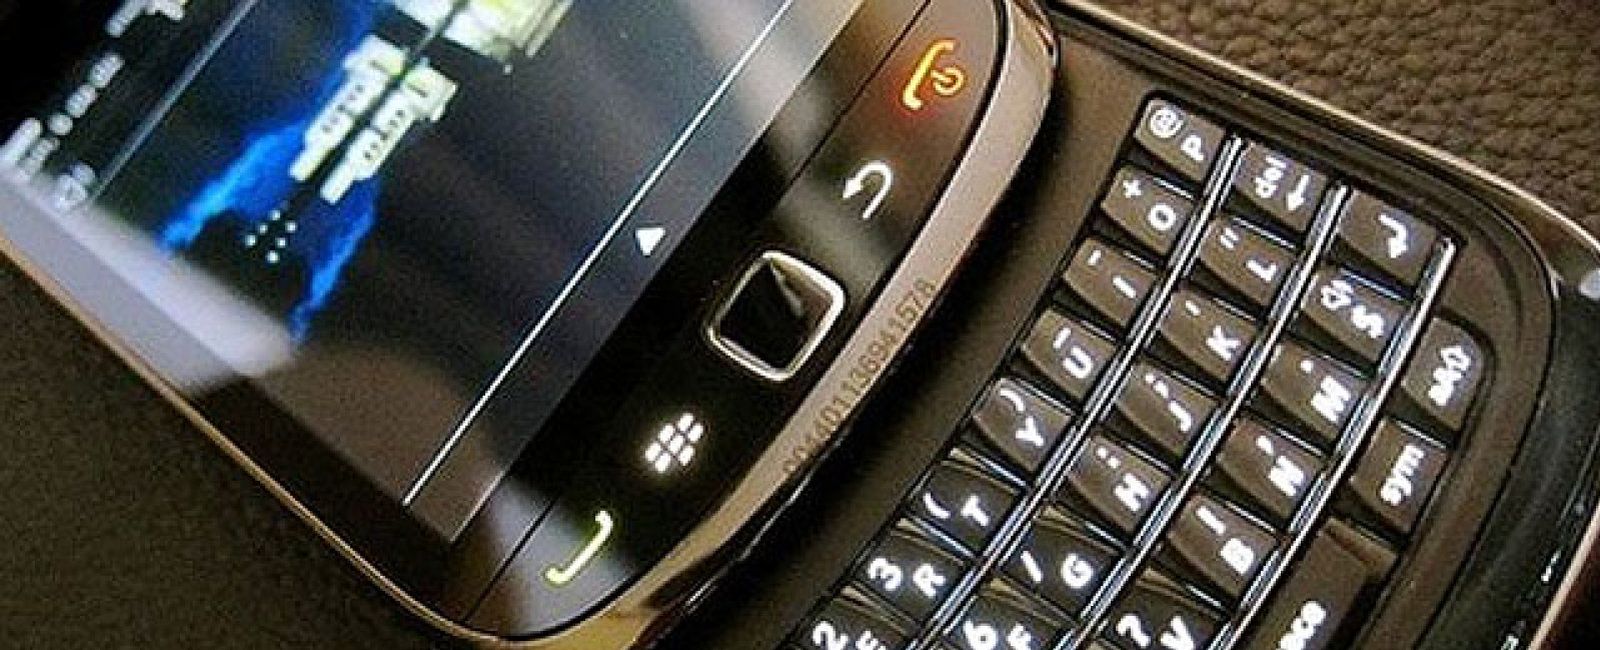 Foto: BlackBerry se apunta a las llamadas gratuitas vía wifi